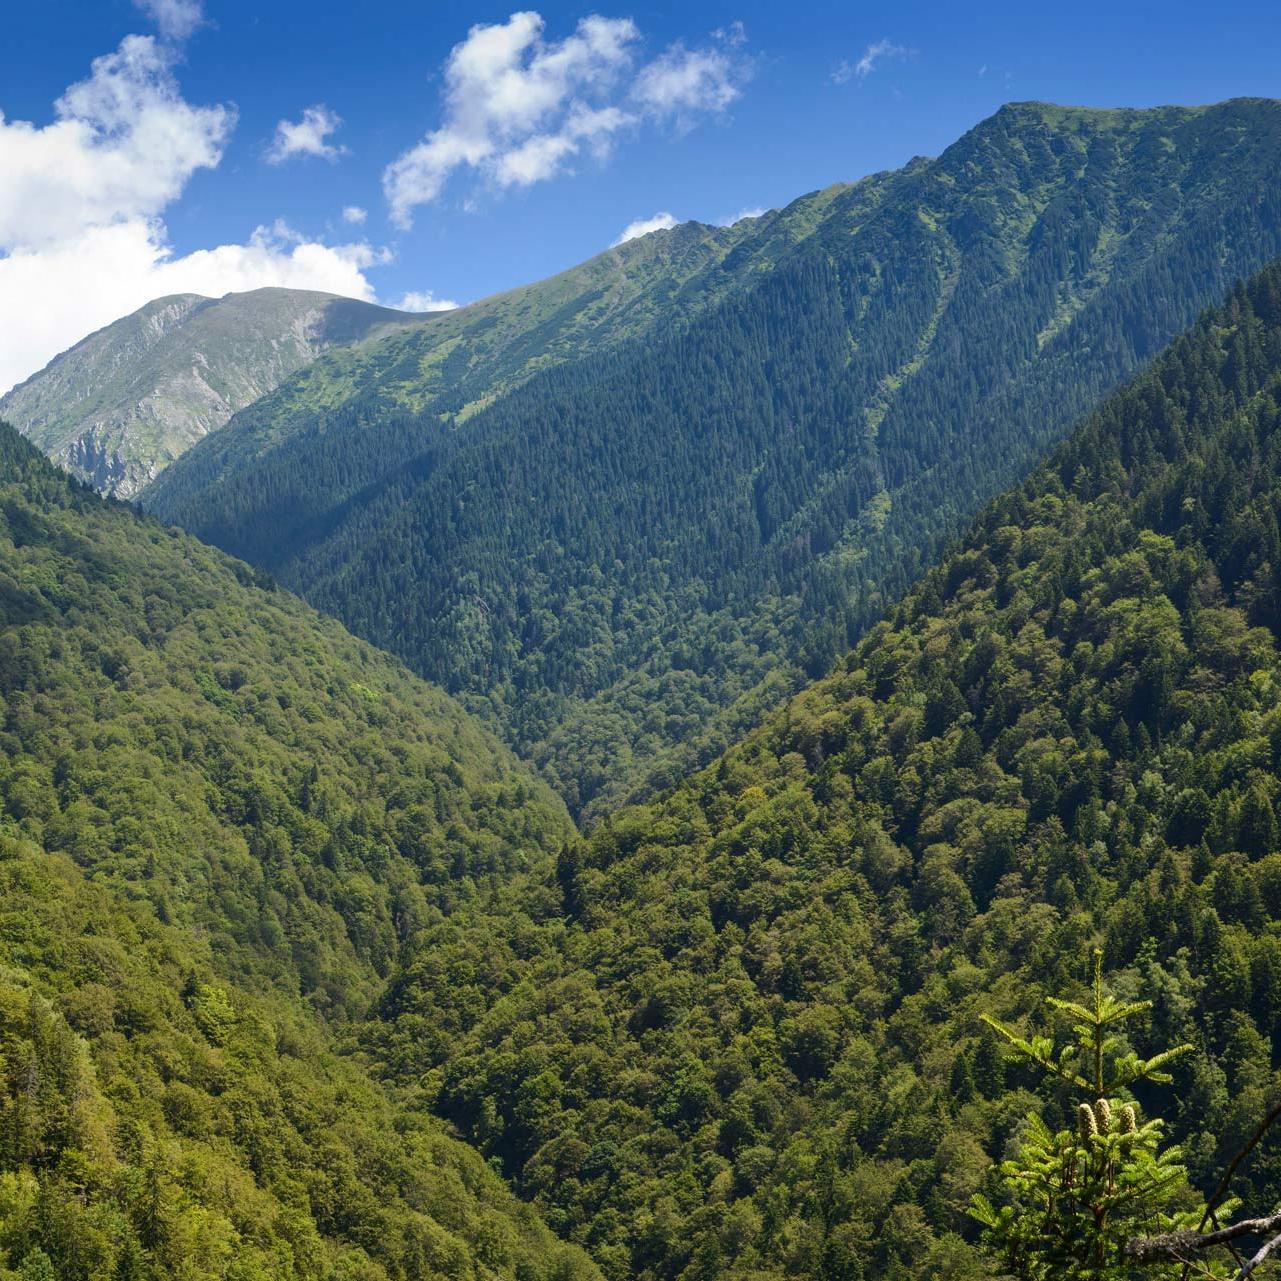 Das bewaldete Gebirgstal von Boia Mica in Rumänien.